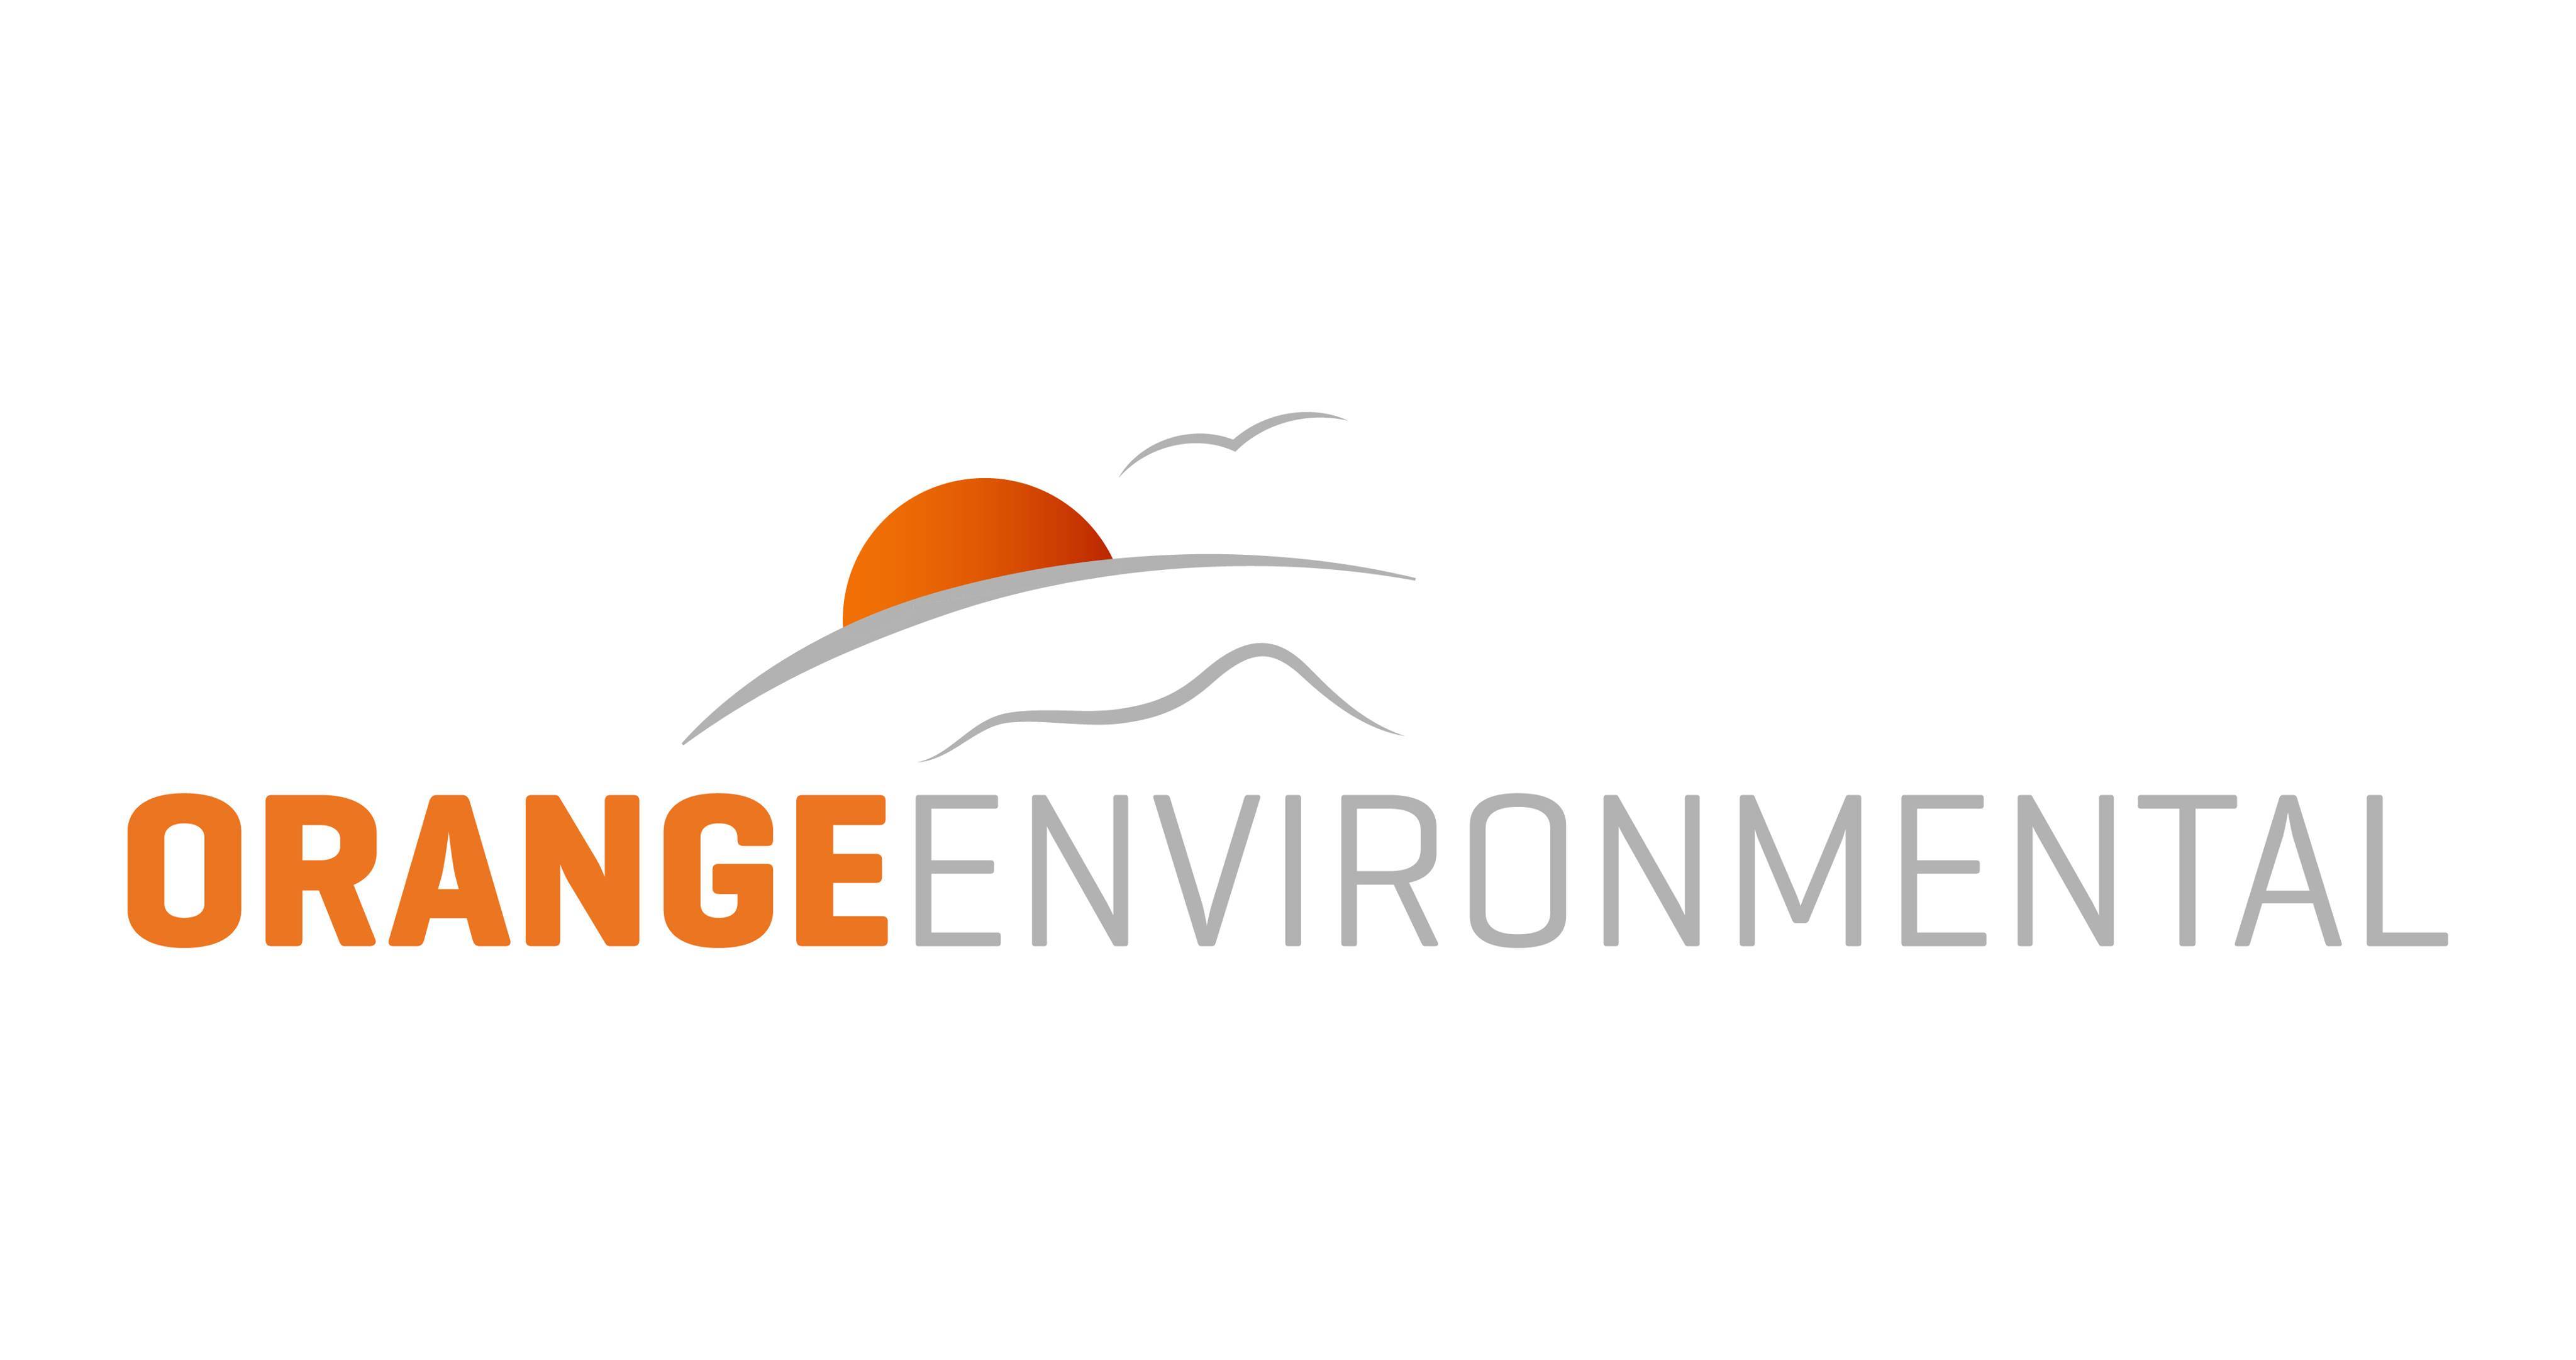 orange environmental logo